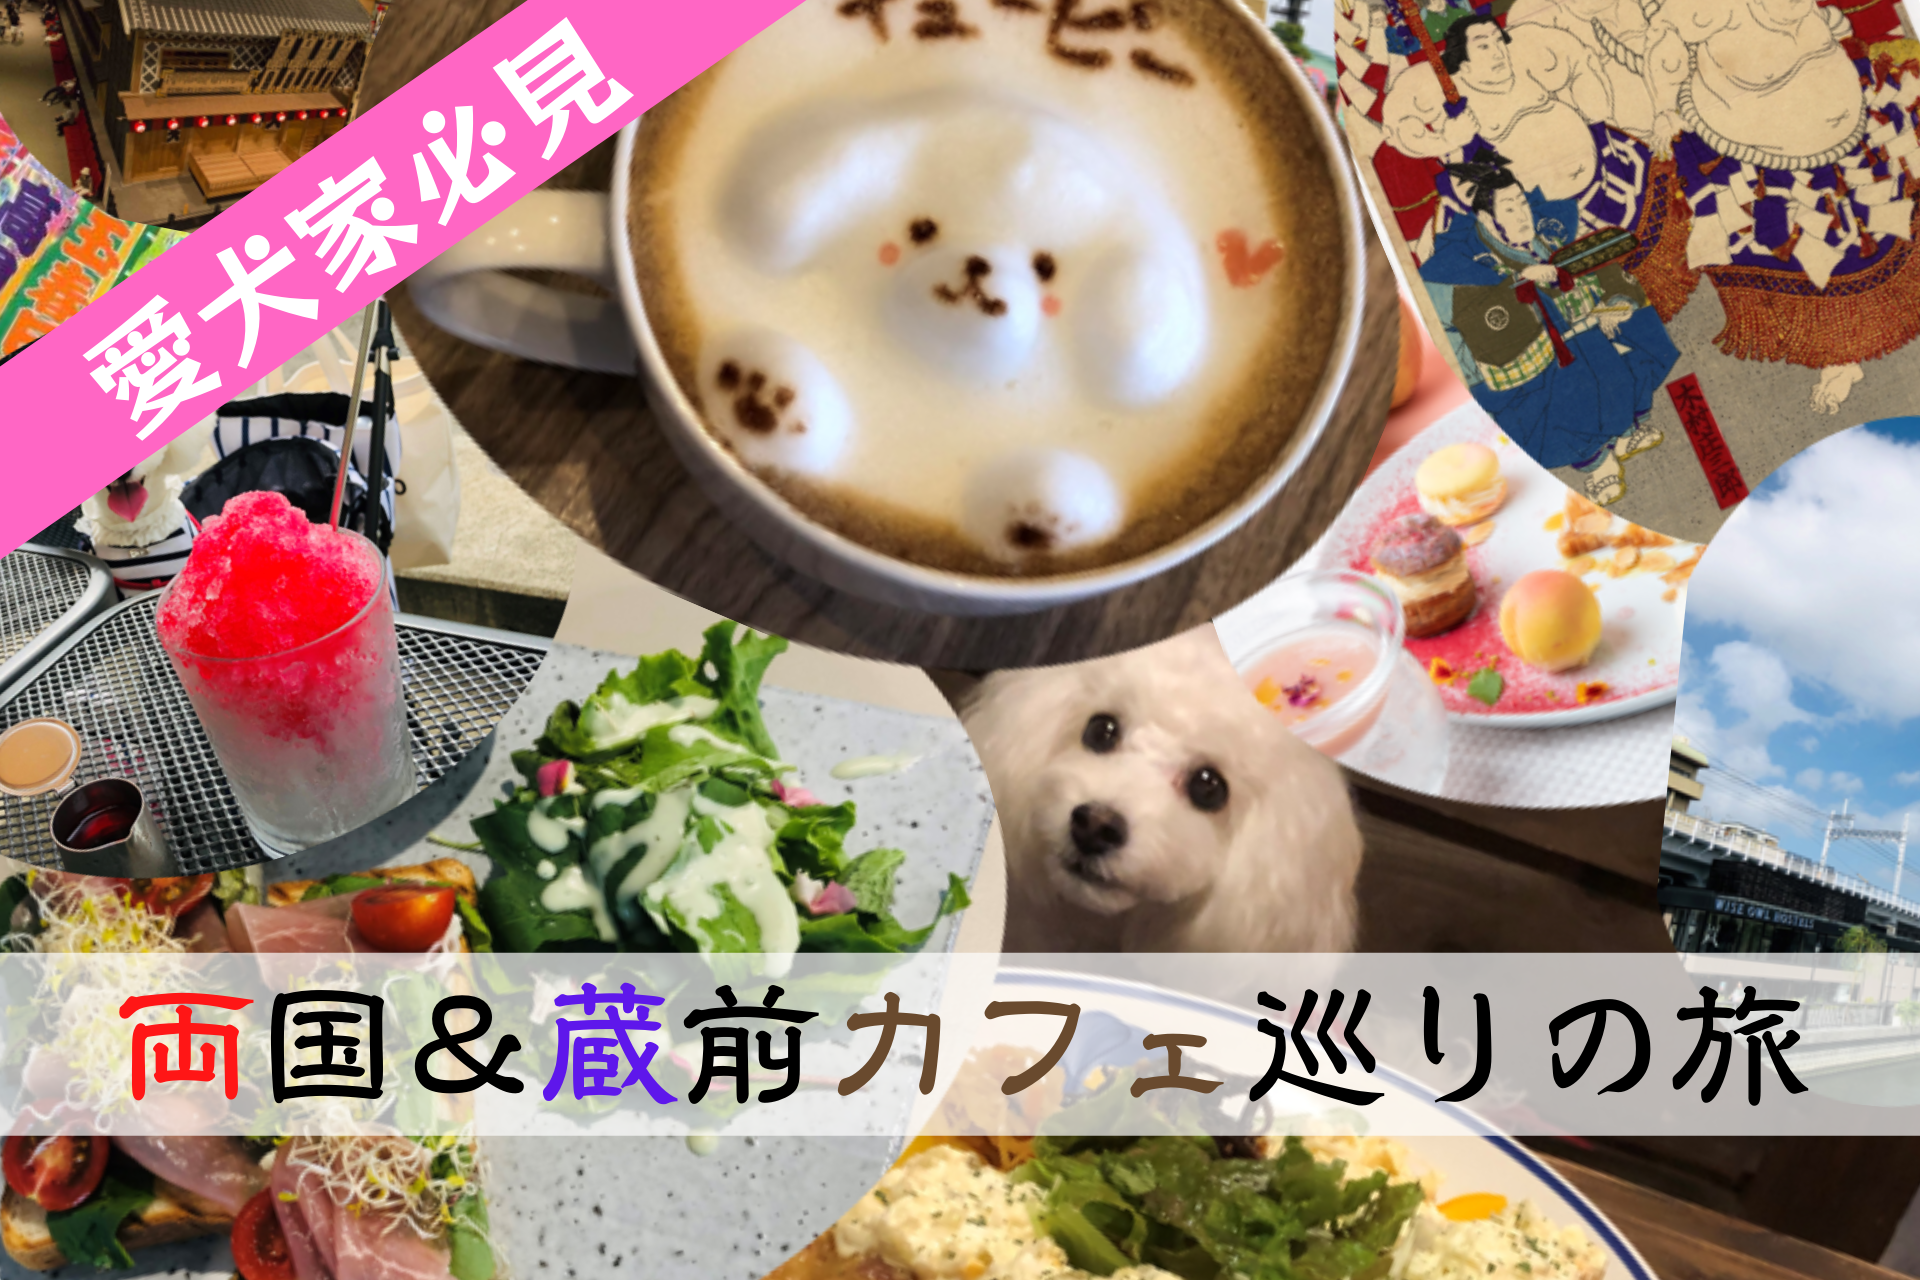 両国、蔵前、台東区、墨田区、ペット可、ドッグカフェ、レストラン、ペット宿泊可能なホテル、東京都、ワンコOK、犬連れ